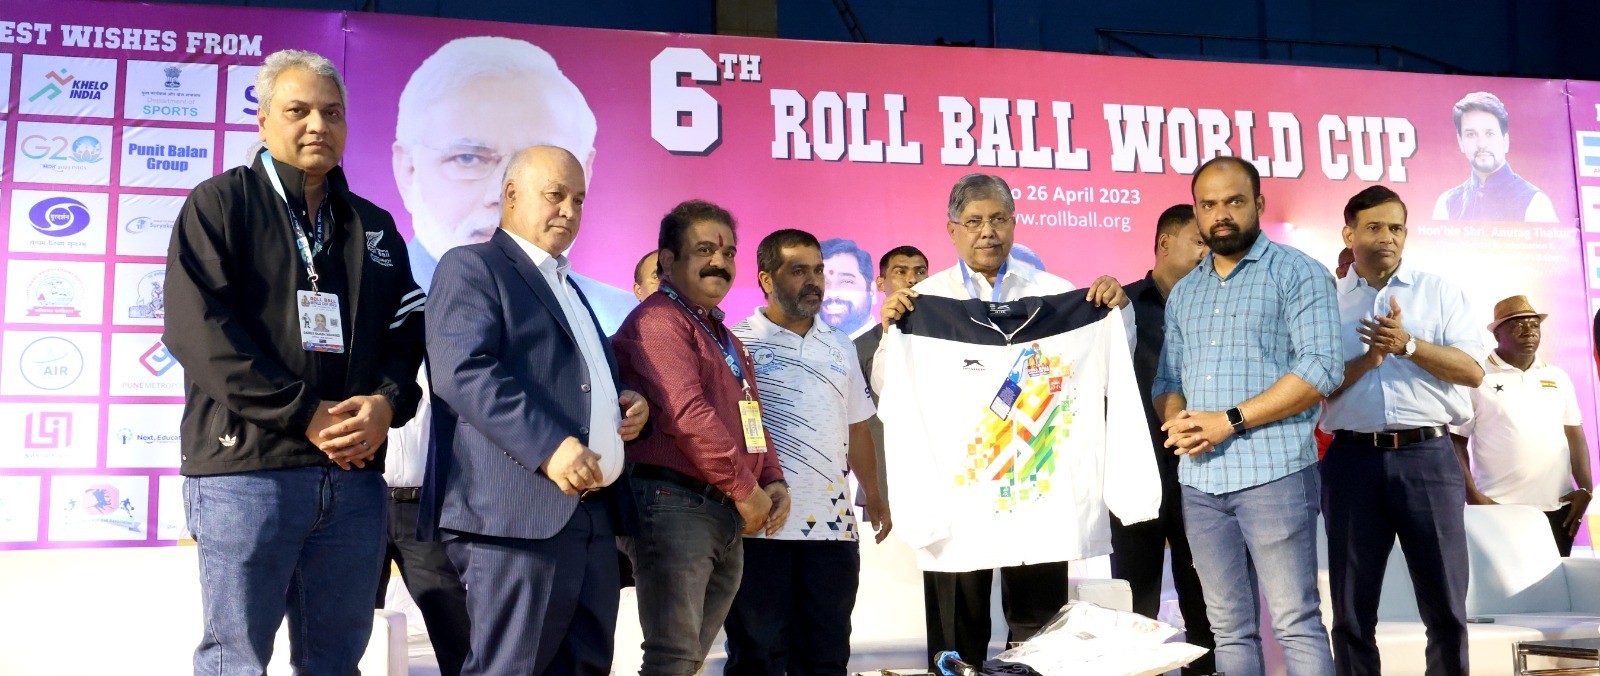 पुरुष गटातून भारताची विजयी सलामी:सहावी विश्वकरंडक रोलबॉल स्पर्धा